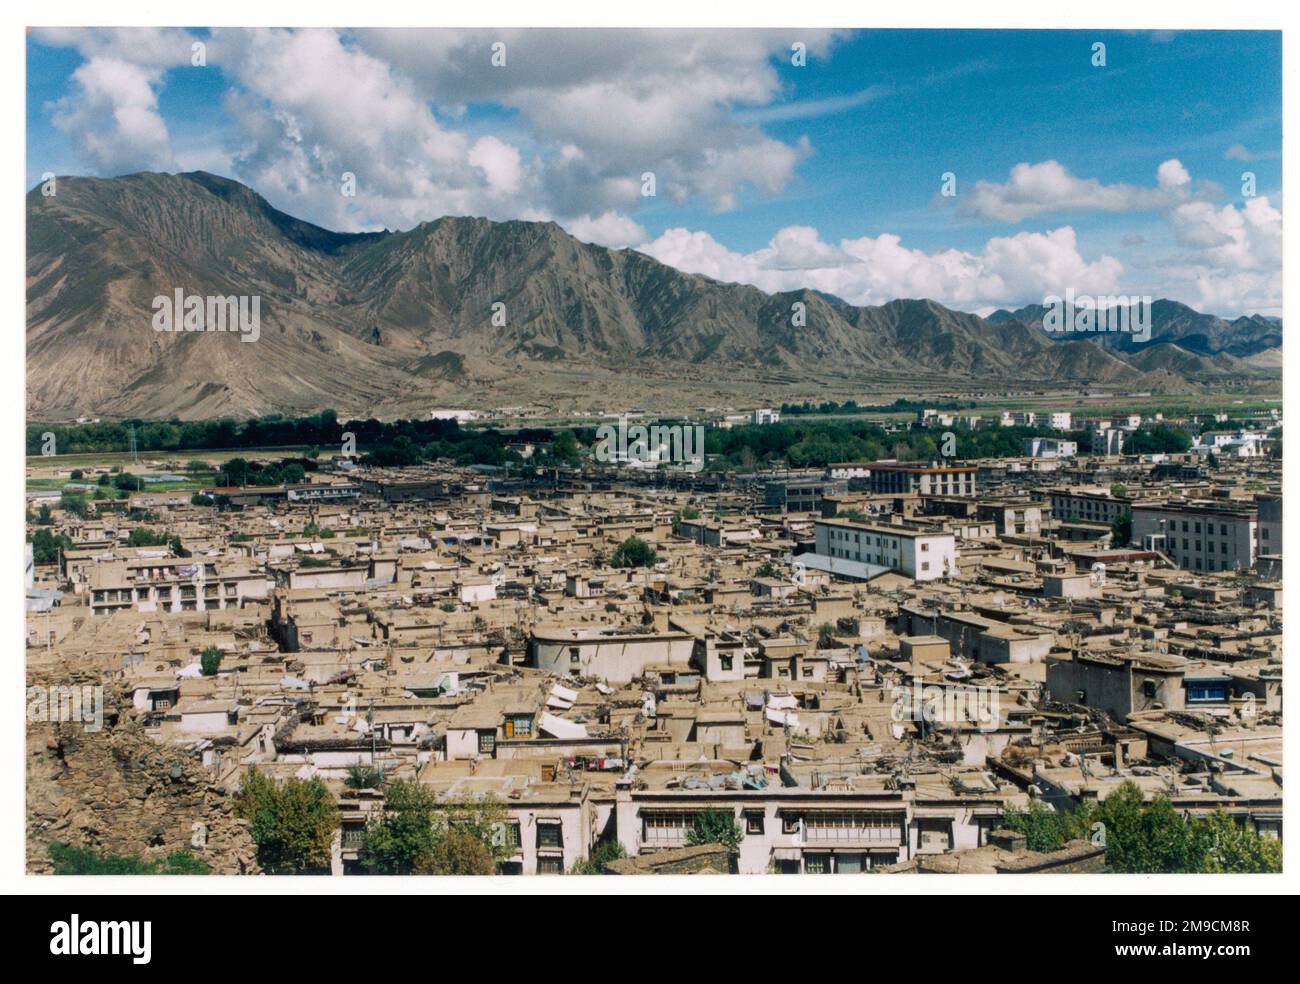 Blick auf die Stadt Shigatse, Tibet, mit herrschenden Bergen im Hintergrund. Stockfoto